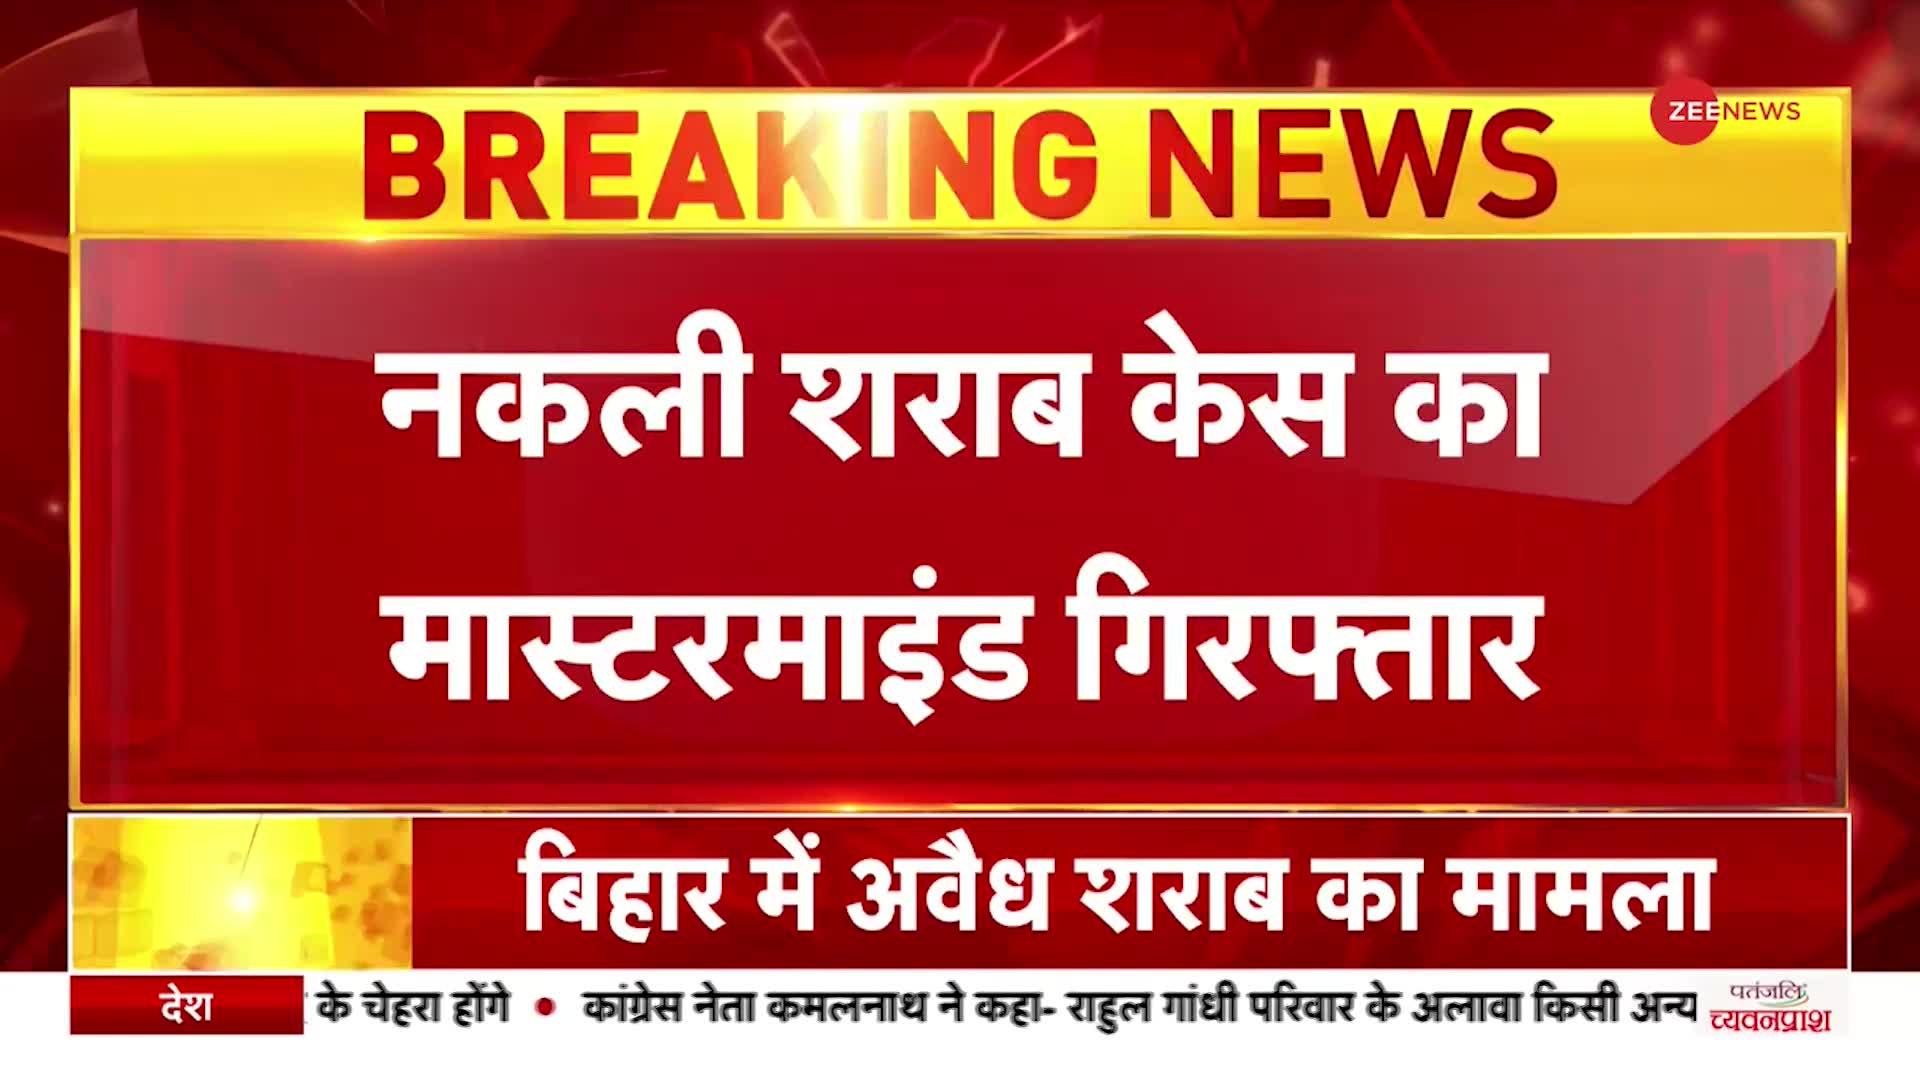 Breaking News: बिहार में जहरीली शराब कांड का मास्टरमाइंड दिल्ली से गिरफ्तार